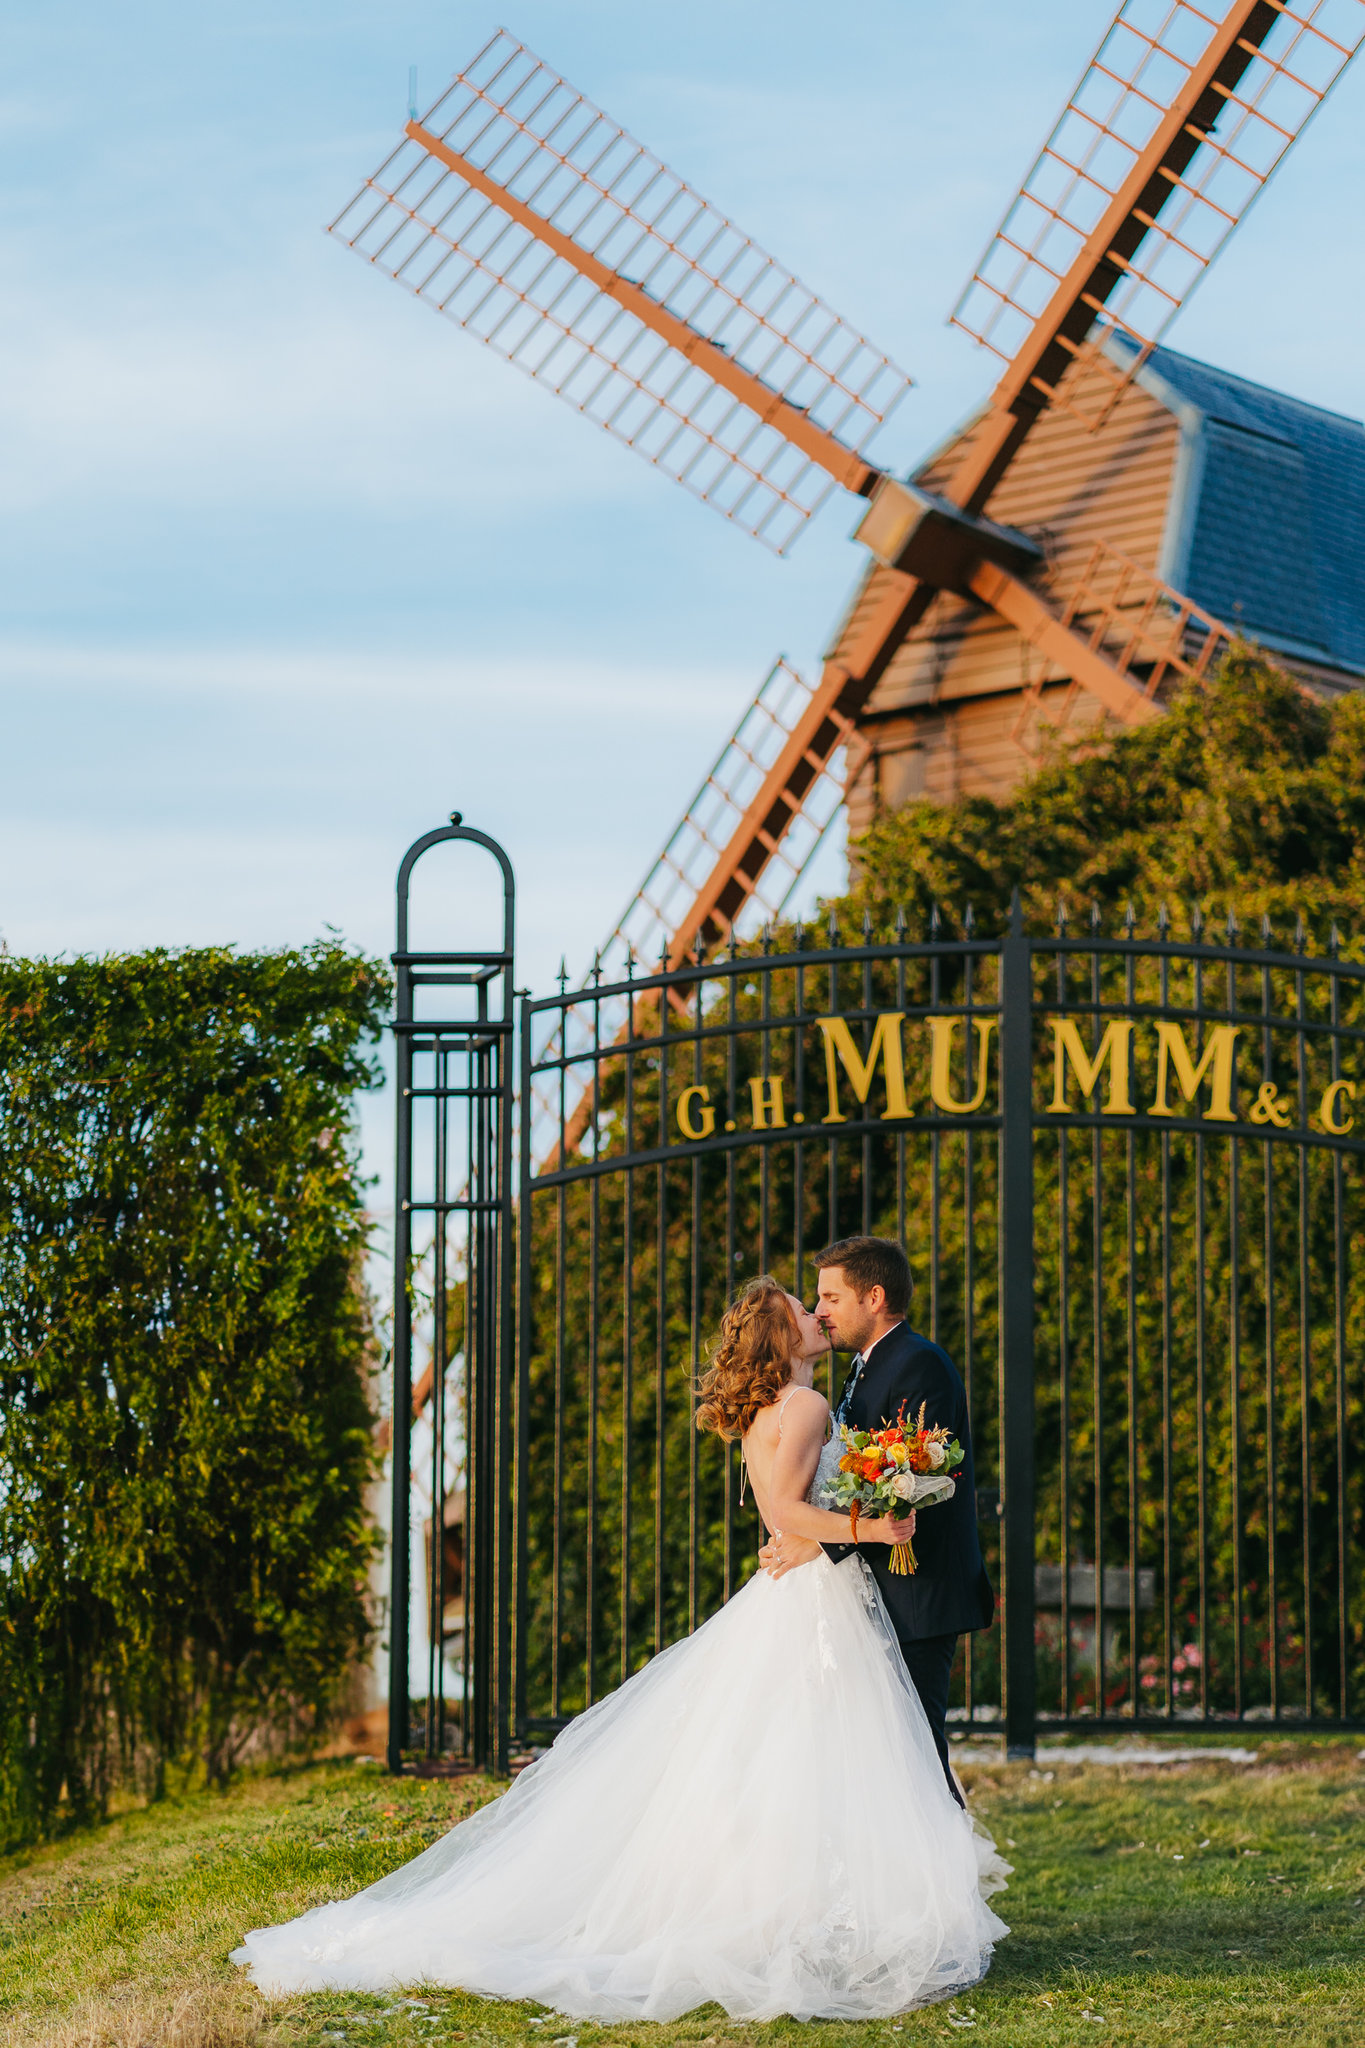 Les mariés partagent un moment intime au bord d’un moulin à vent.